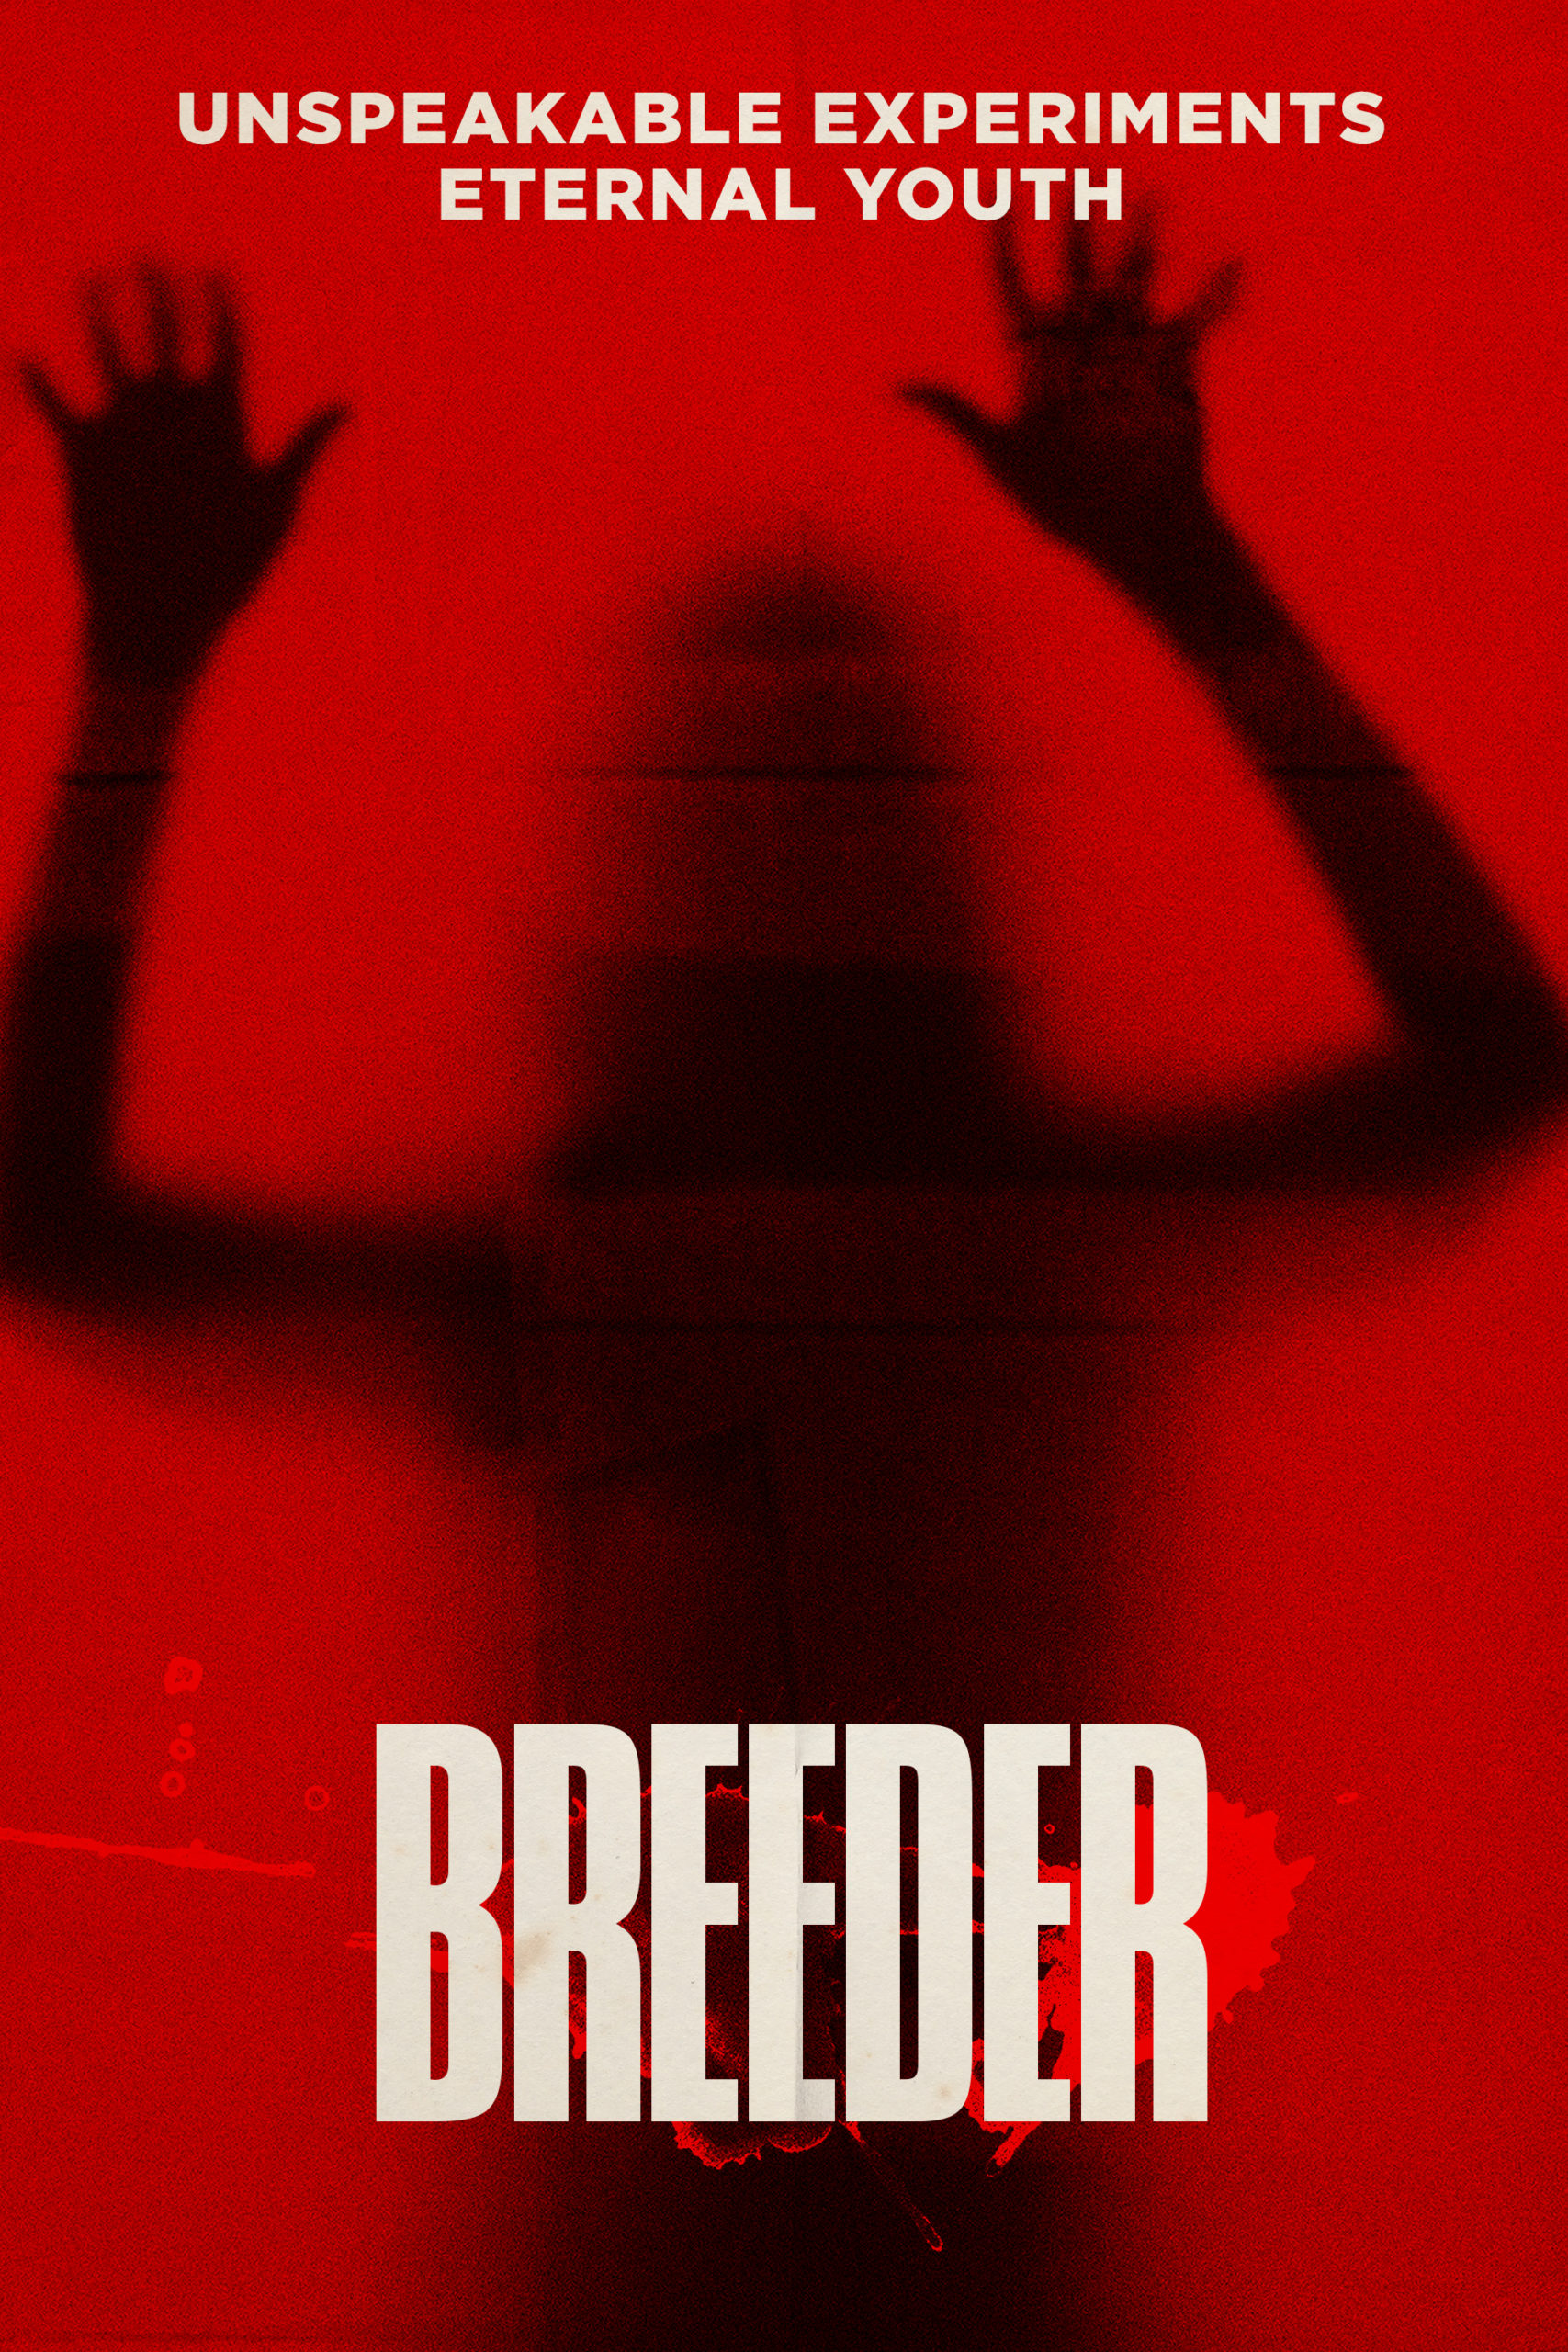 Breeder Movie Review